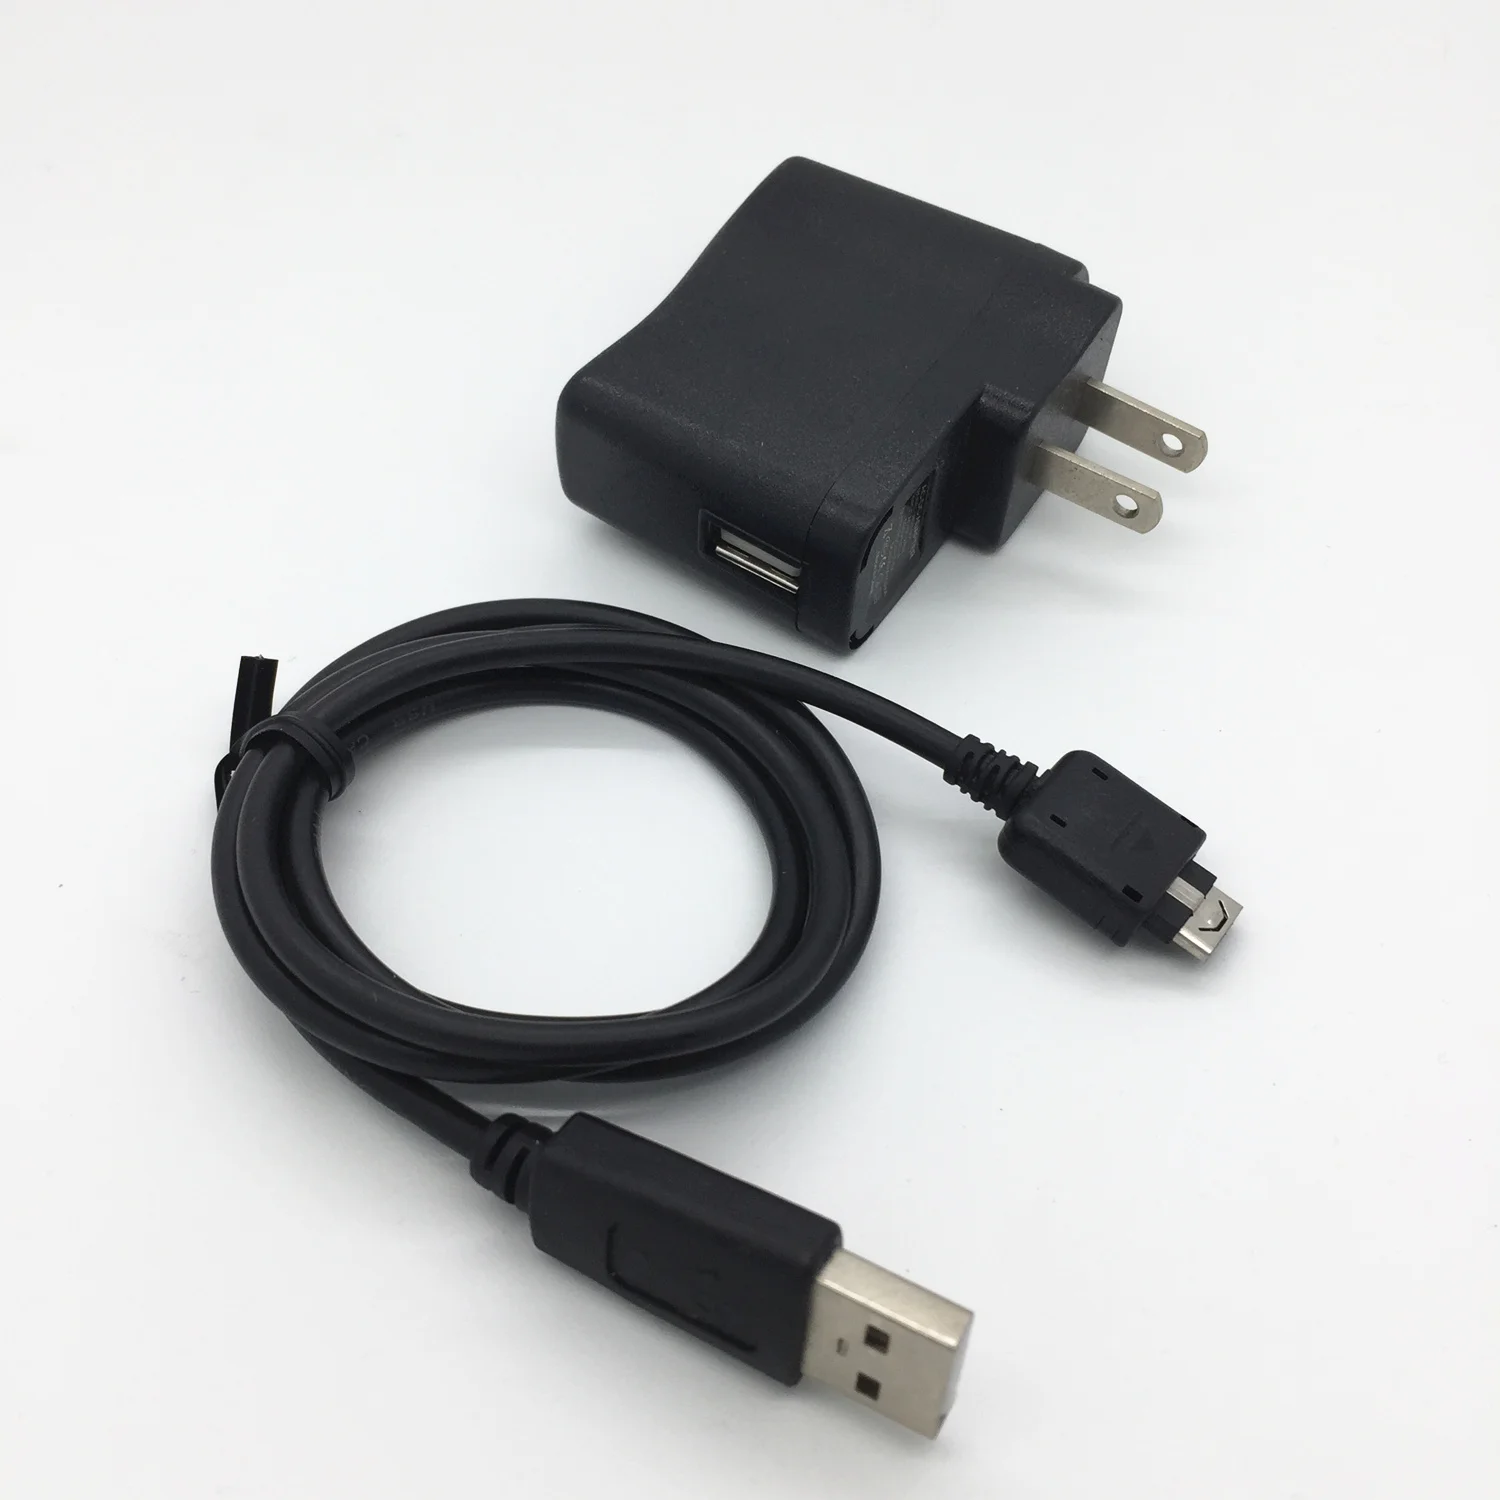 EU AU US KU настенное зарядное устройство+ кабель USB для синхронизации LG KE800 KE850 KE770 KE970 KF510 CU720 Shine KU970 KF600 KF700